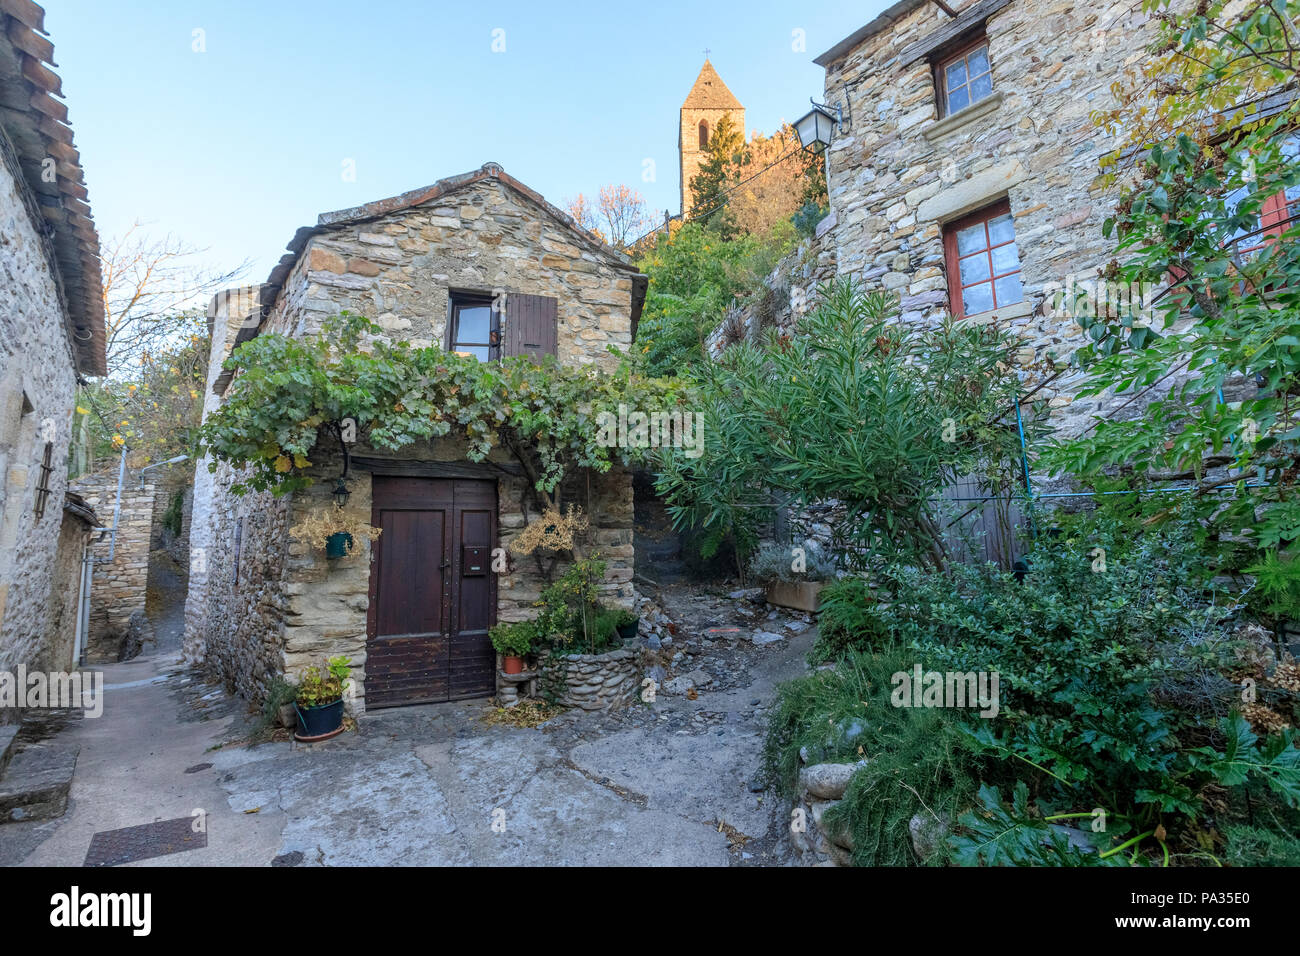 France, Herault, Haut Languedoc Regional Natural Park, Olargues, labelled Les Plus Beaux Villages de France (The Most beautiful Villages of France), R Stock Photo